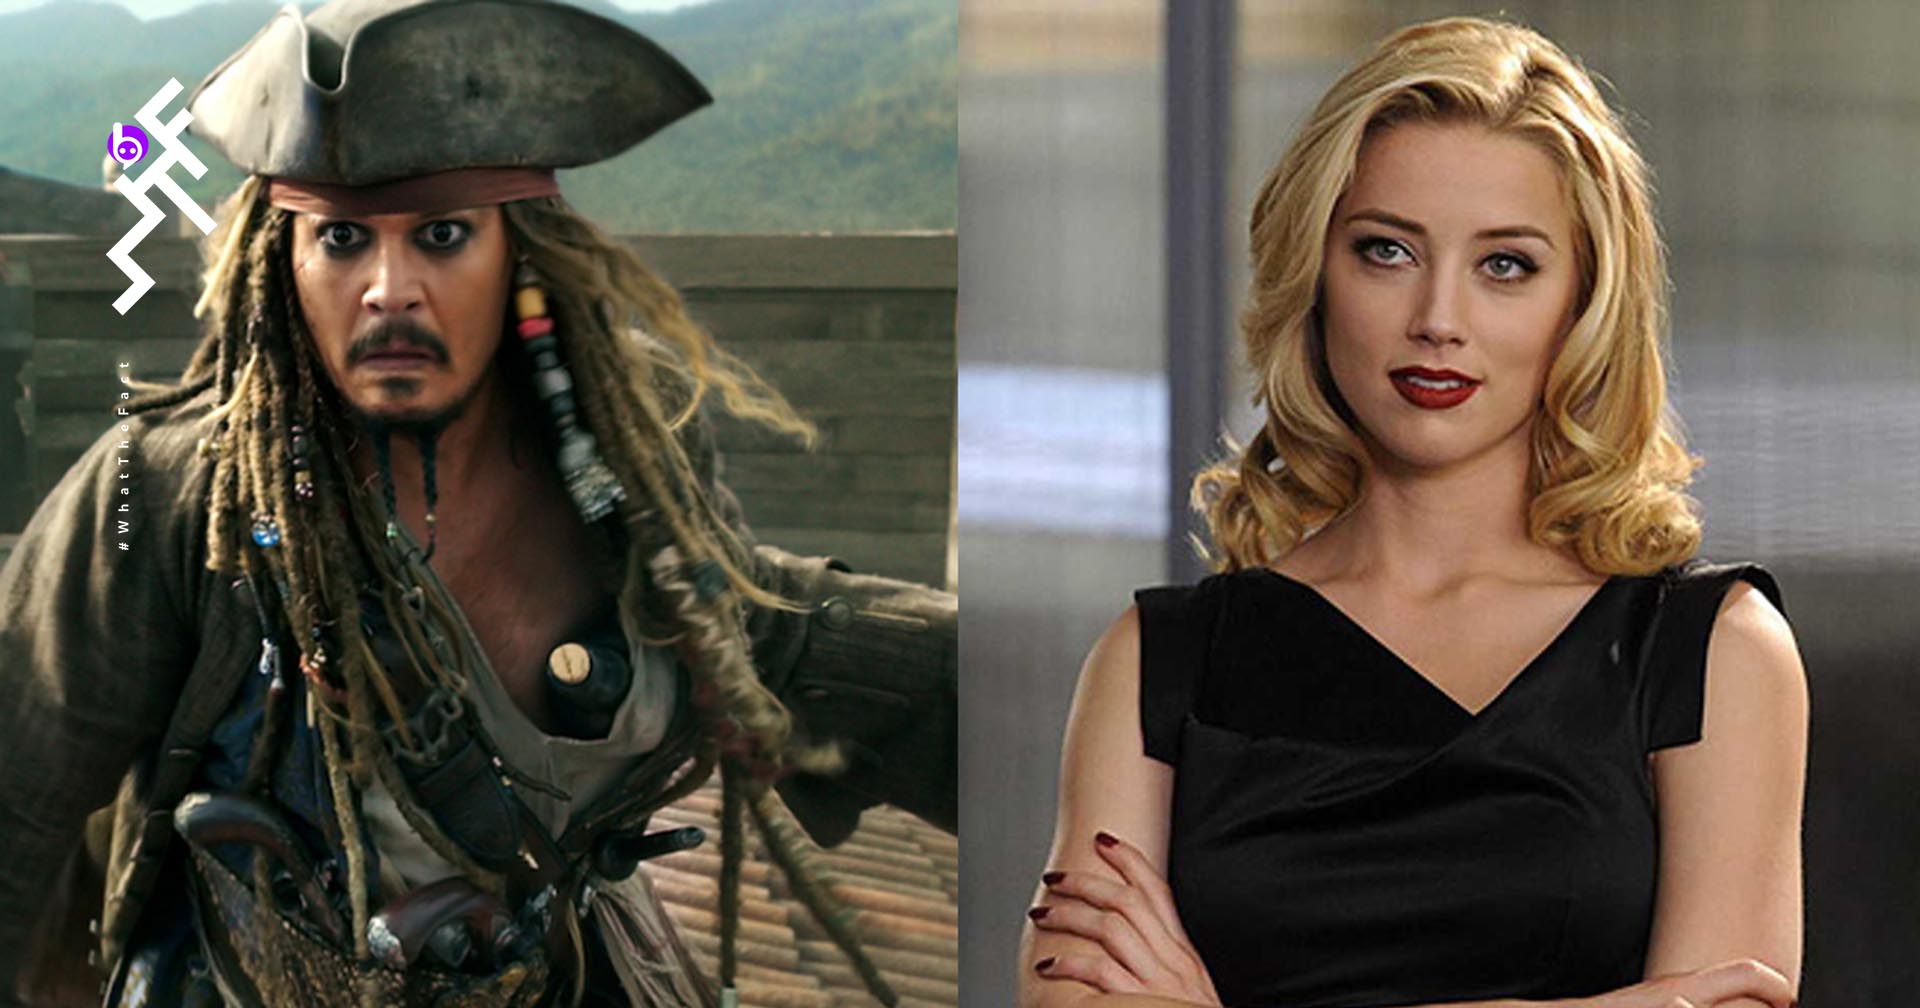 แสบมั้ยละ? Amber Heard อาจขอให้ Margot Robbie ช่วยเธอเพื่อรับบทใน Pirates of the Caribbean ภาคใหม่